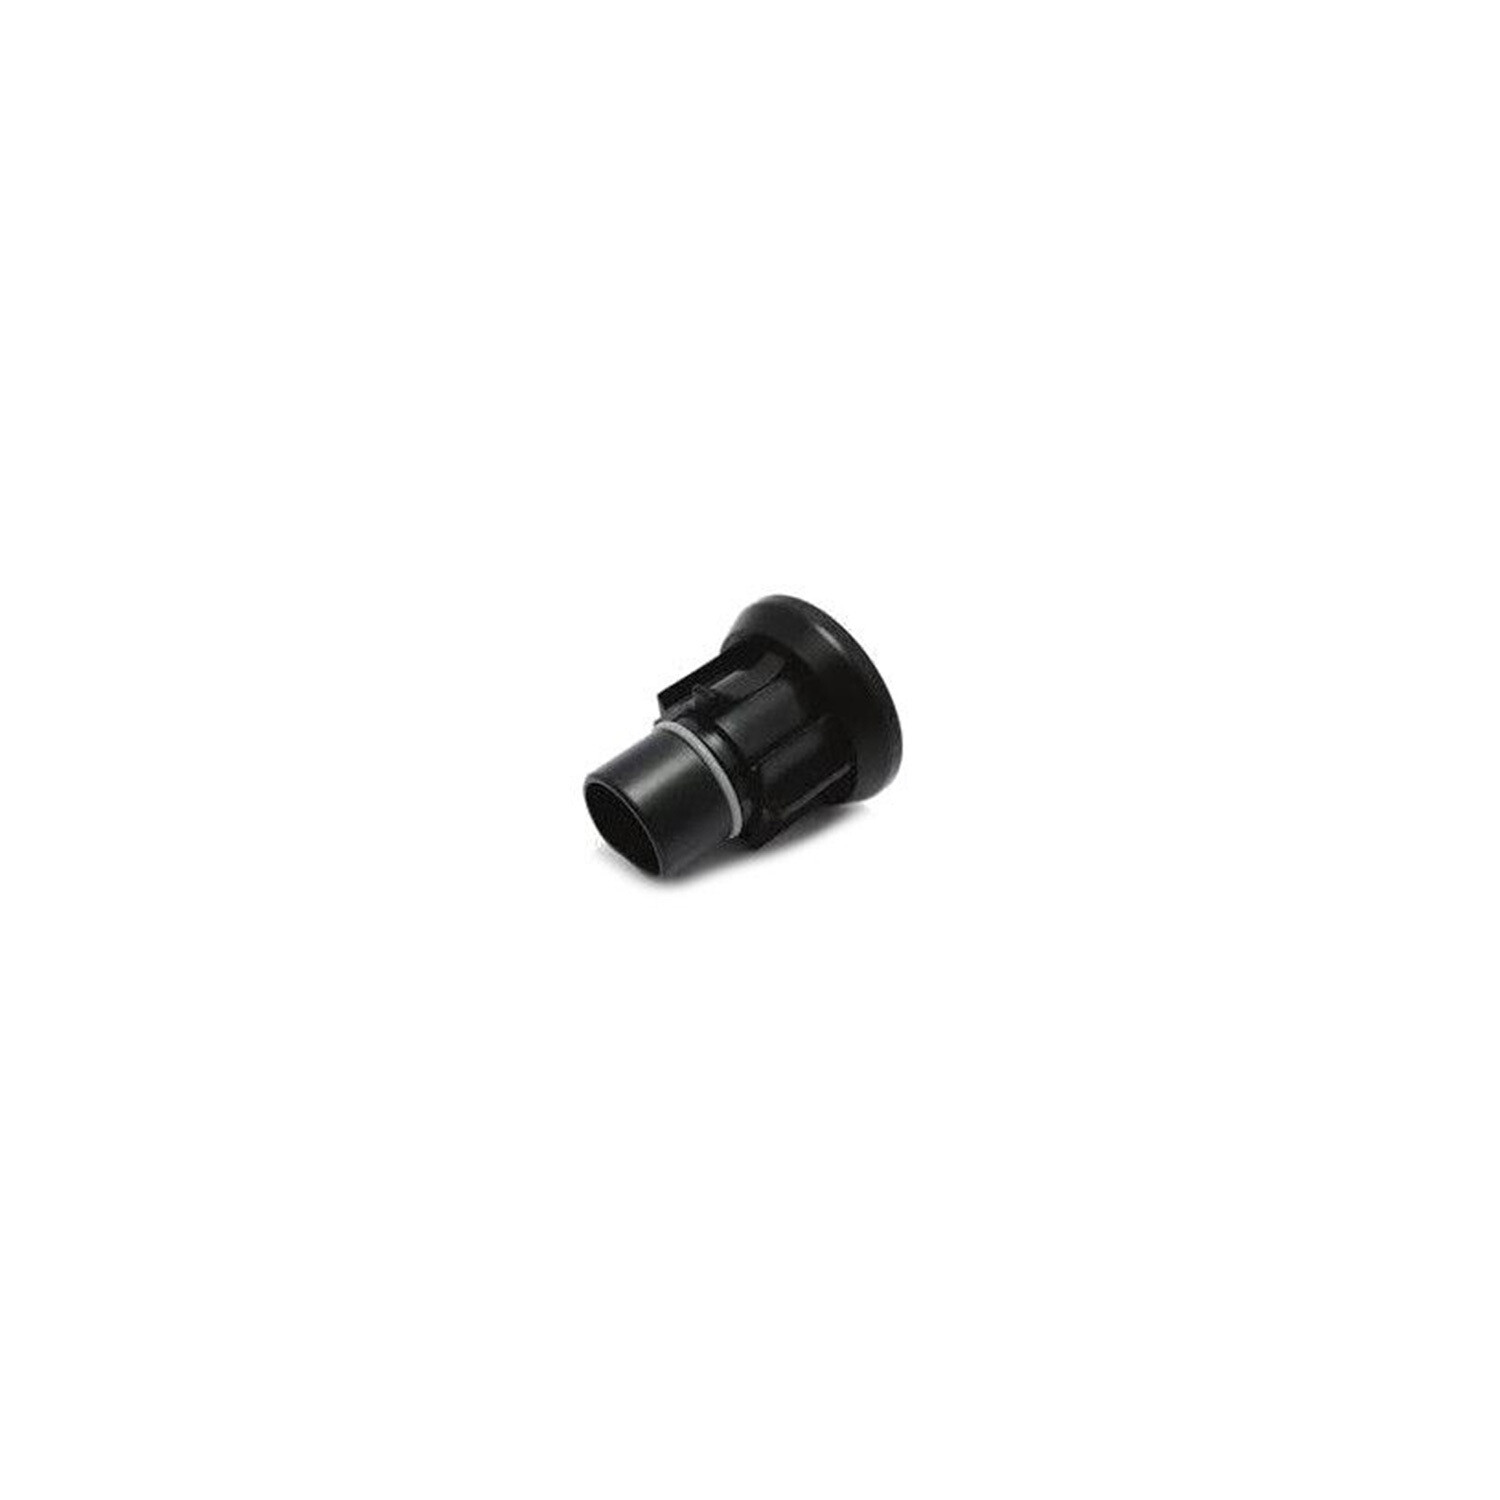 Endkappe / Verschlusskappe
Wasserdichte Verschlusskappe (Endkappe) für Microwechselrichter HM-300 sowie HM-600.